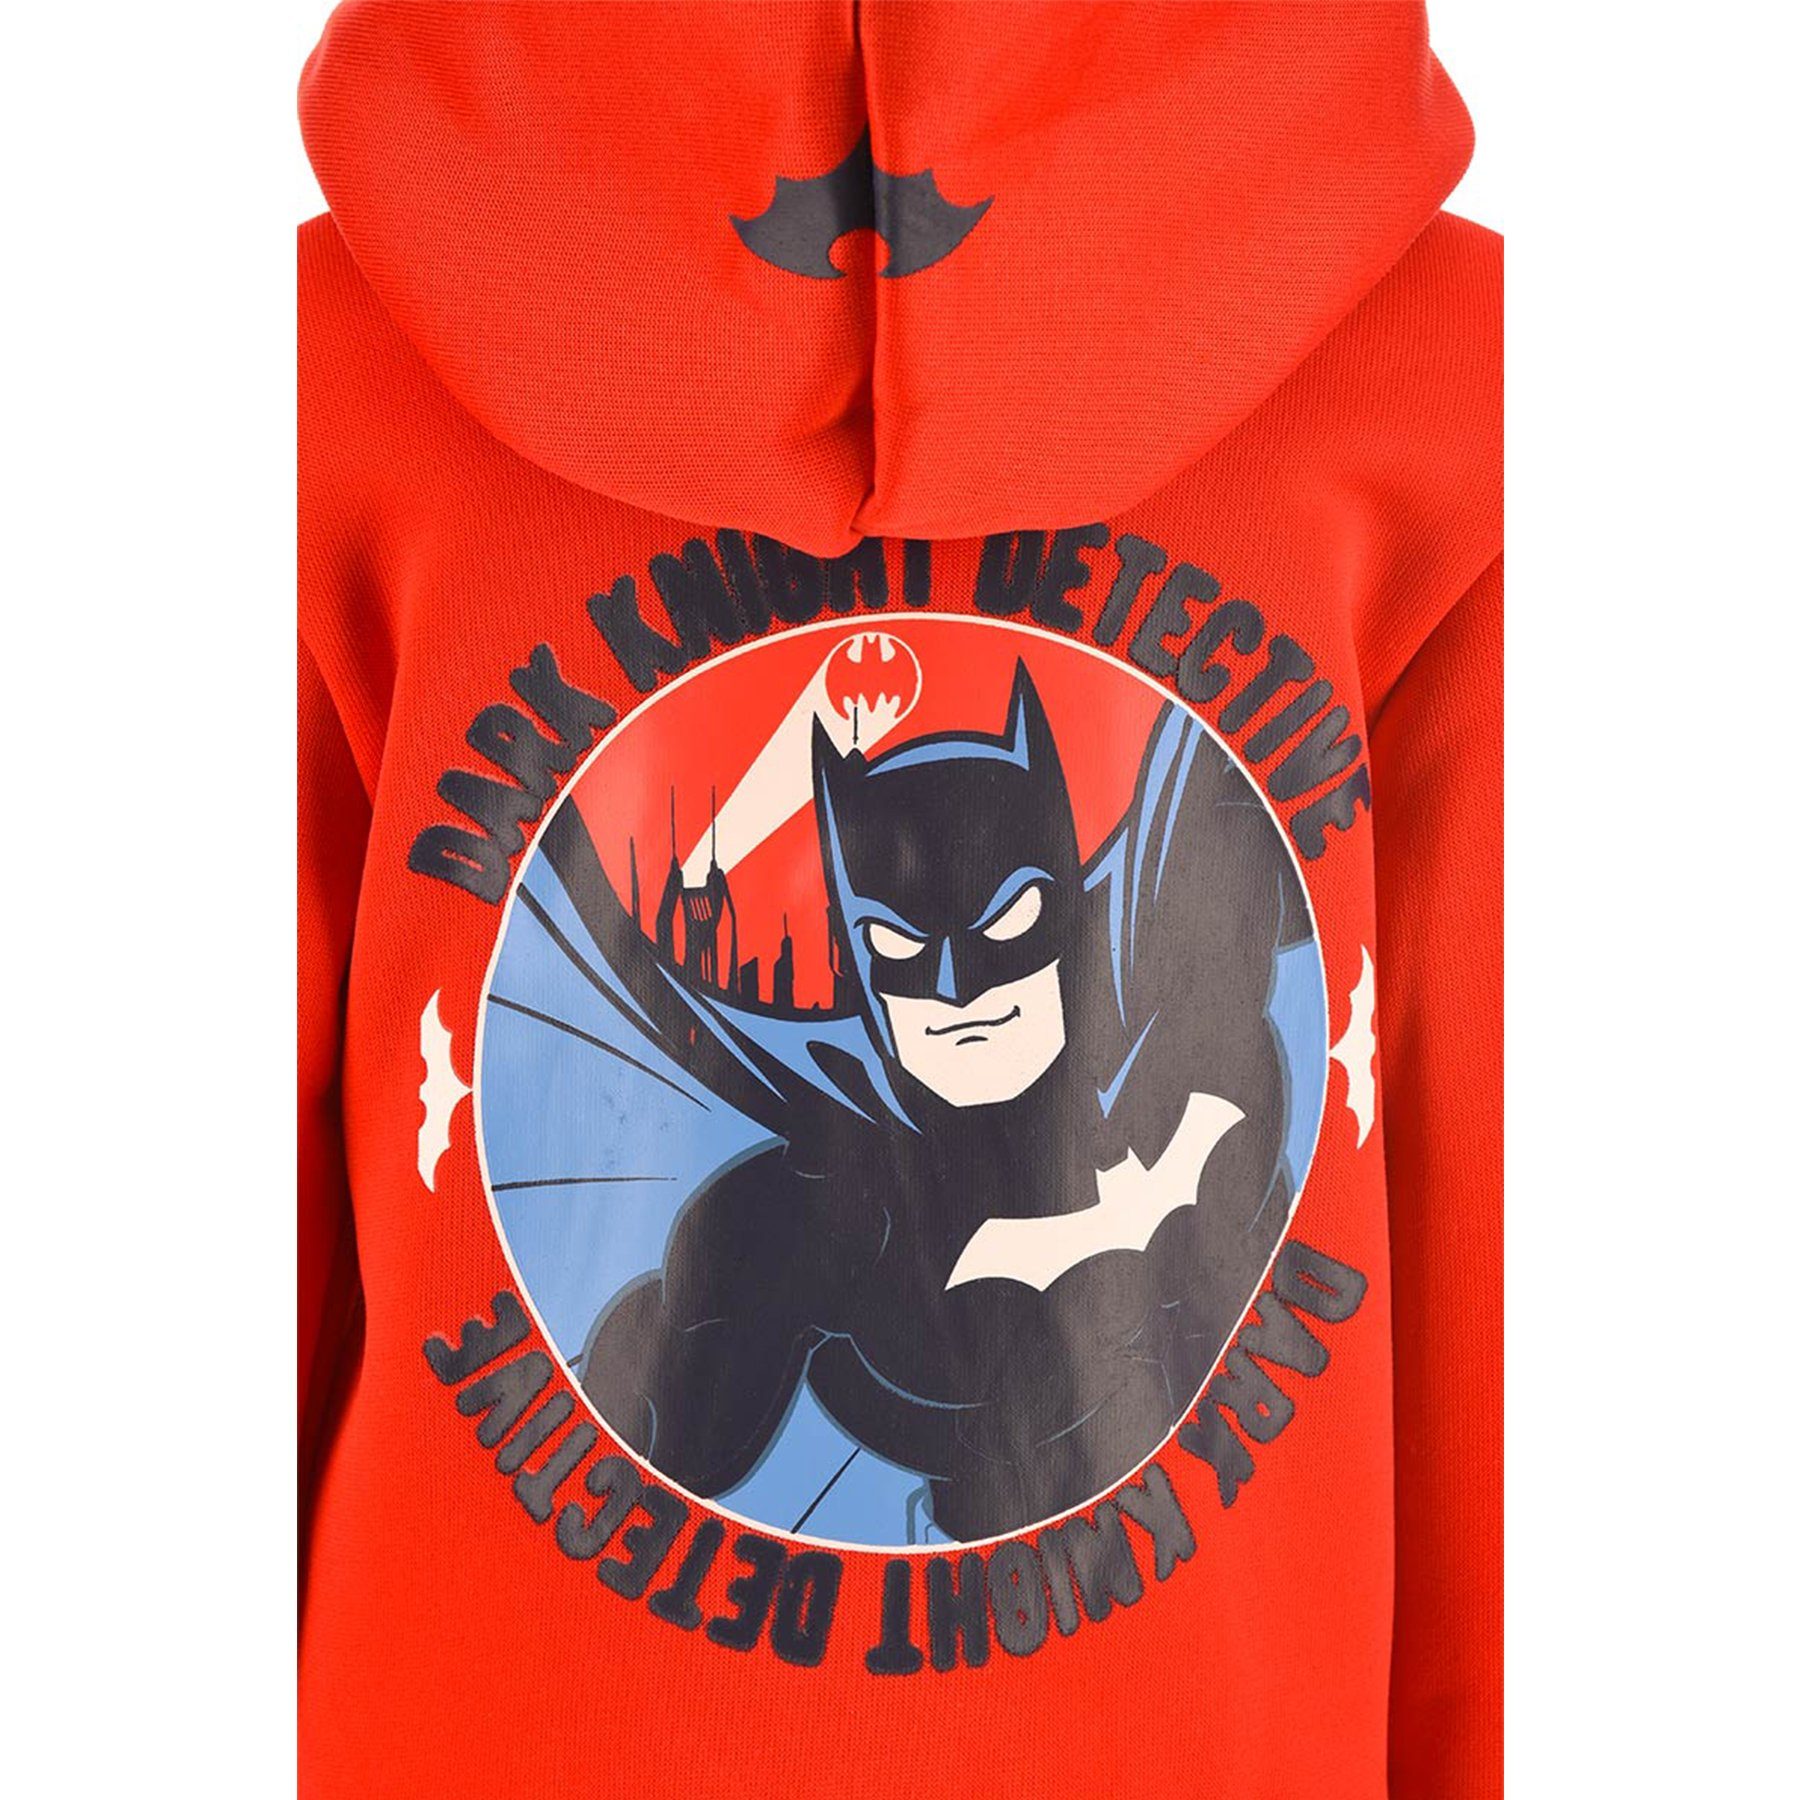 Batman Kapuzensweatjacke Dirk Knight Sweatjacke Kapuze Pullover-Jacke Reißverschluss Kapuzenjacke Rot Hoodie